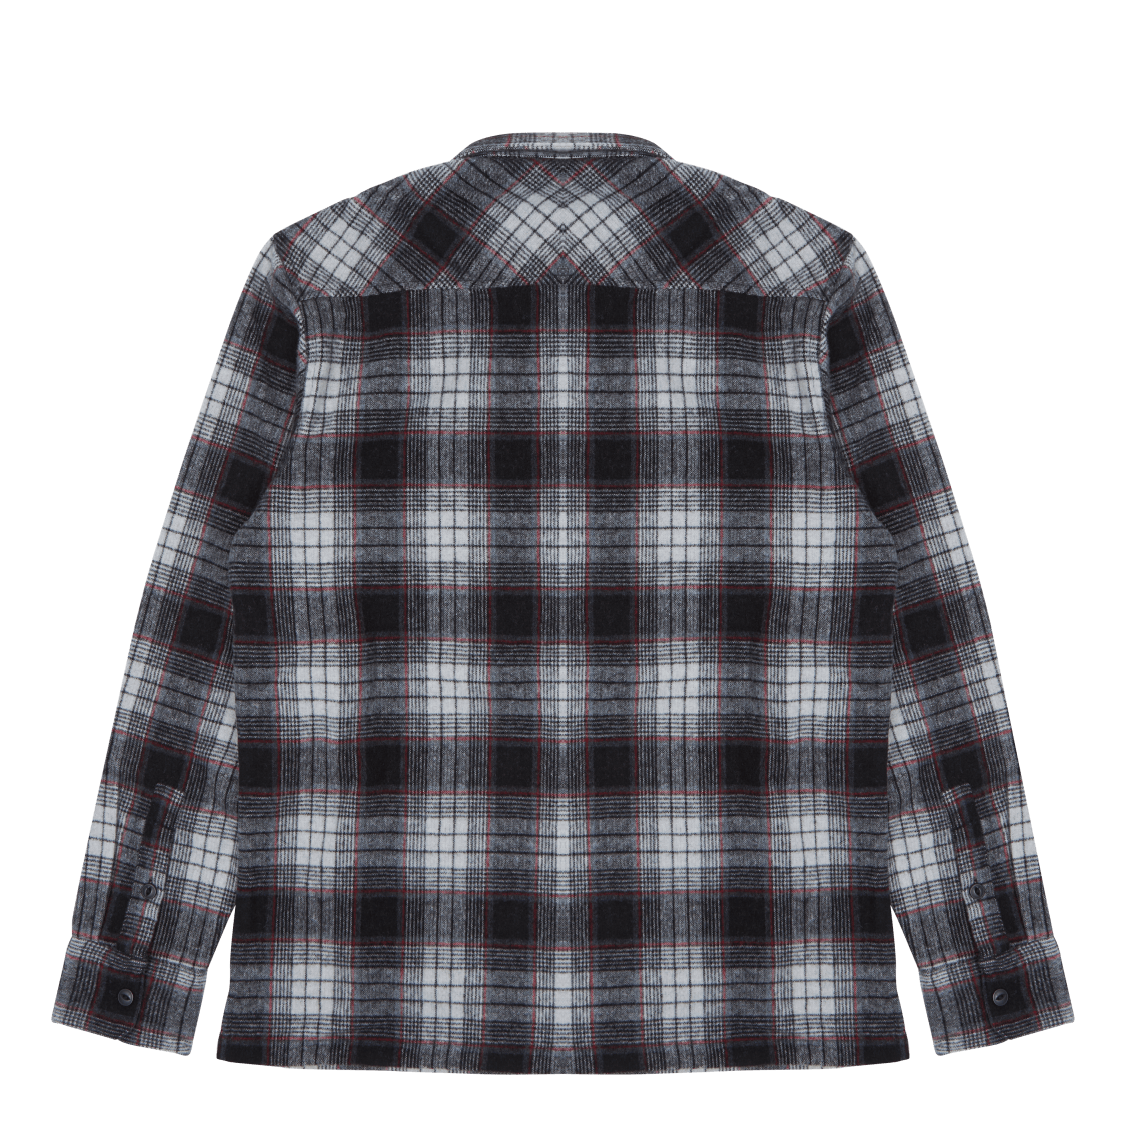 L/s Hagen Shirt 55/40/5% Polye Hagen Check, Hammer